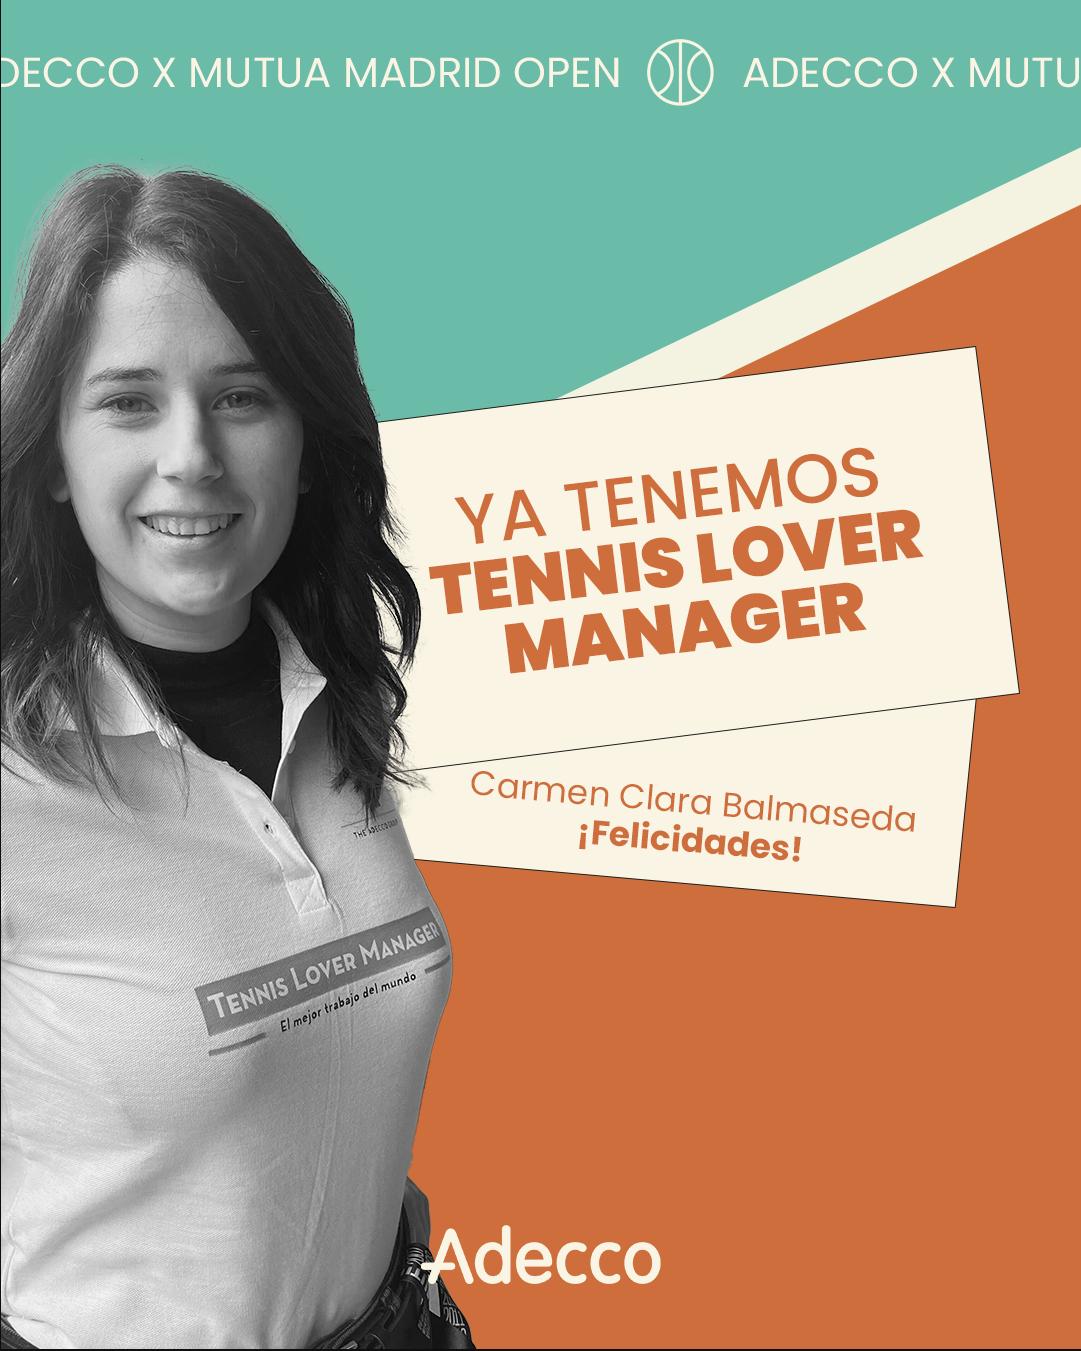 Carmen Balmaseda es la primera Tennis Lover Manager del mundo para el Mutua Madrid Open